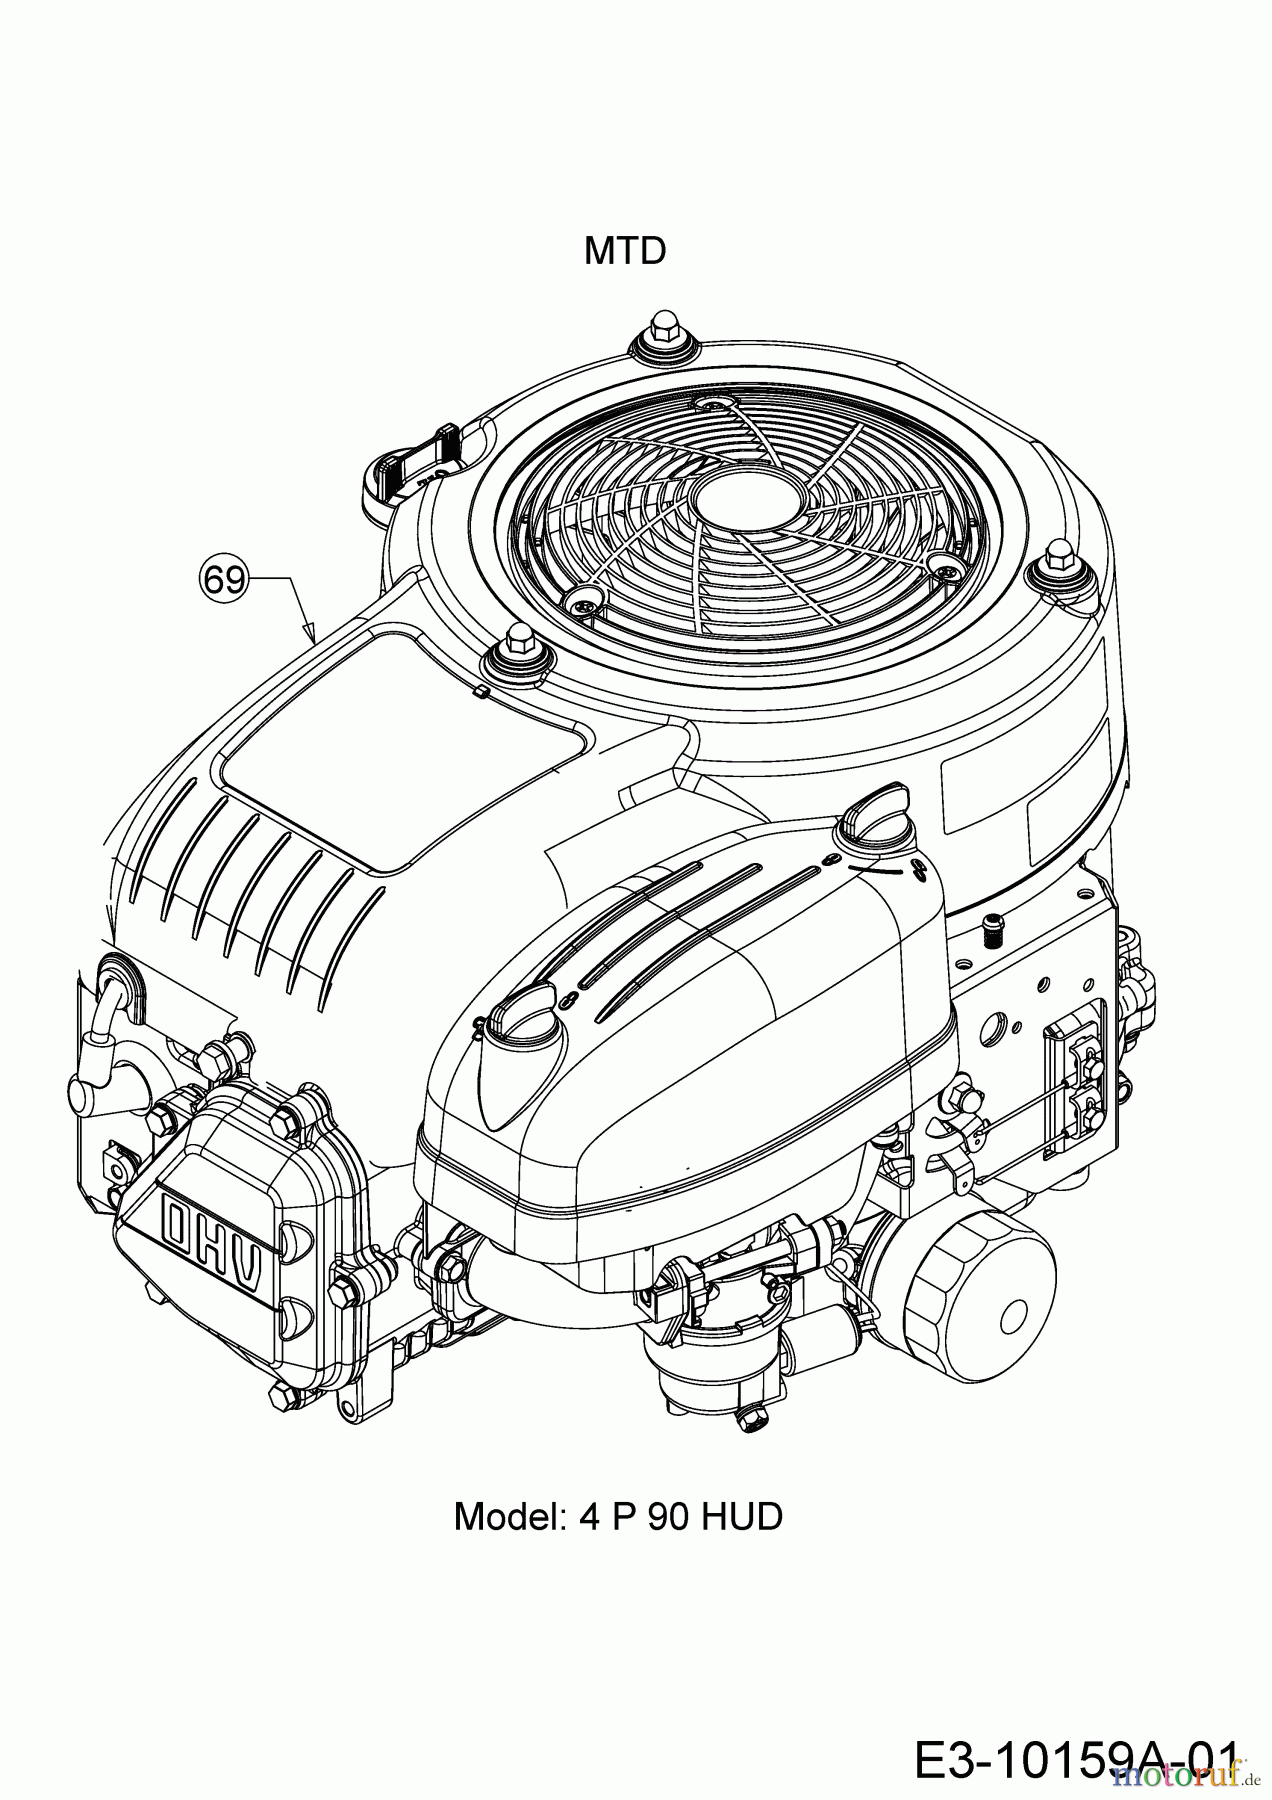  Helington Rasentraktoren H 92 T 13H276KE686  (2017) Motor MTD